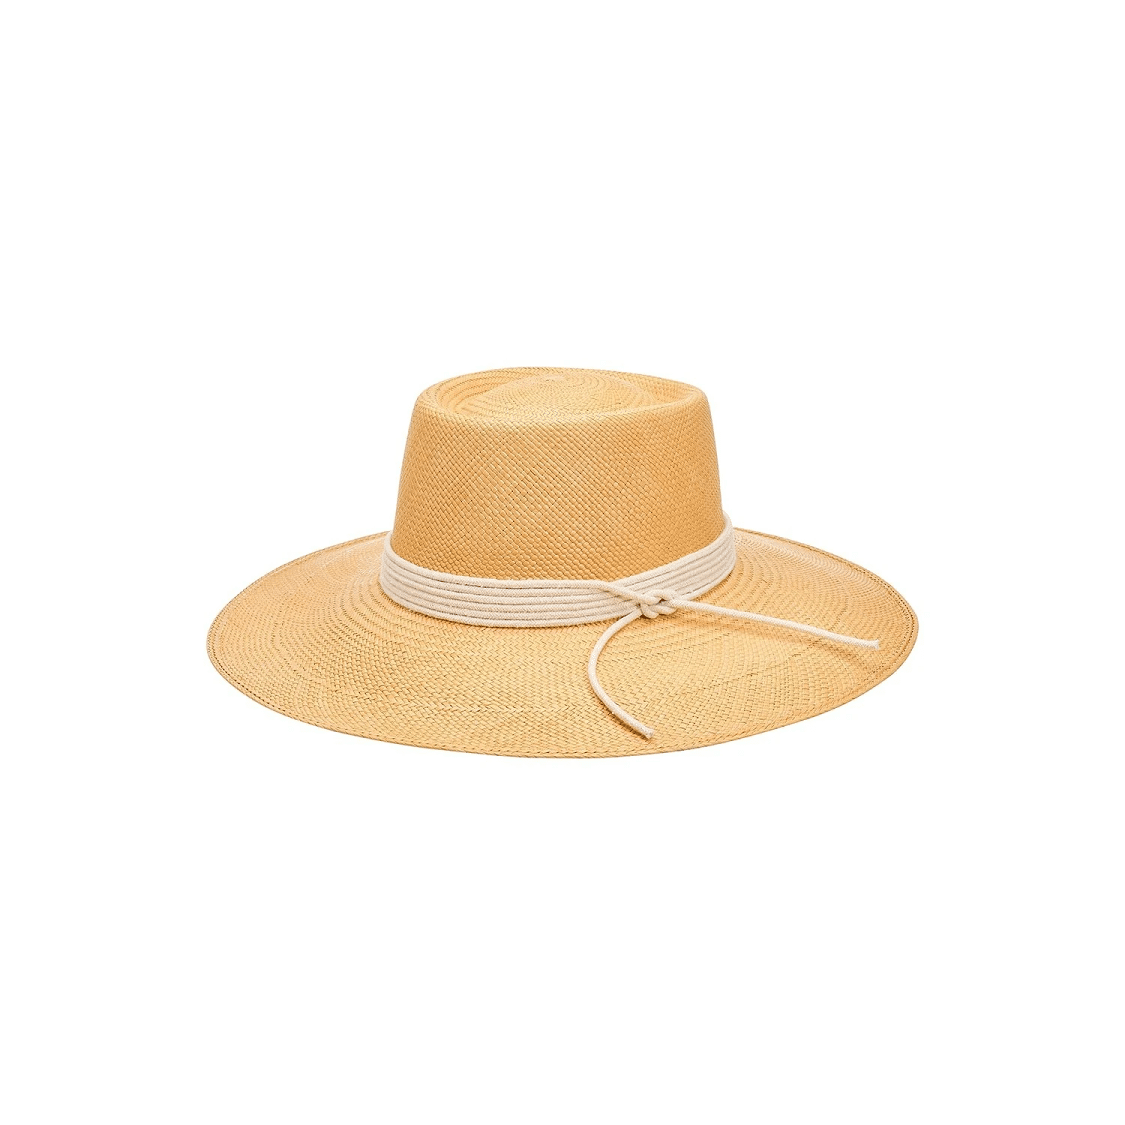 Polo Wide Brim Puglia Hat In Cinnamon With Ivory Cord